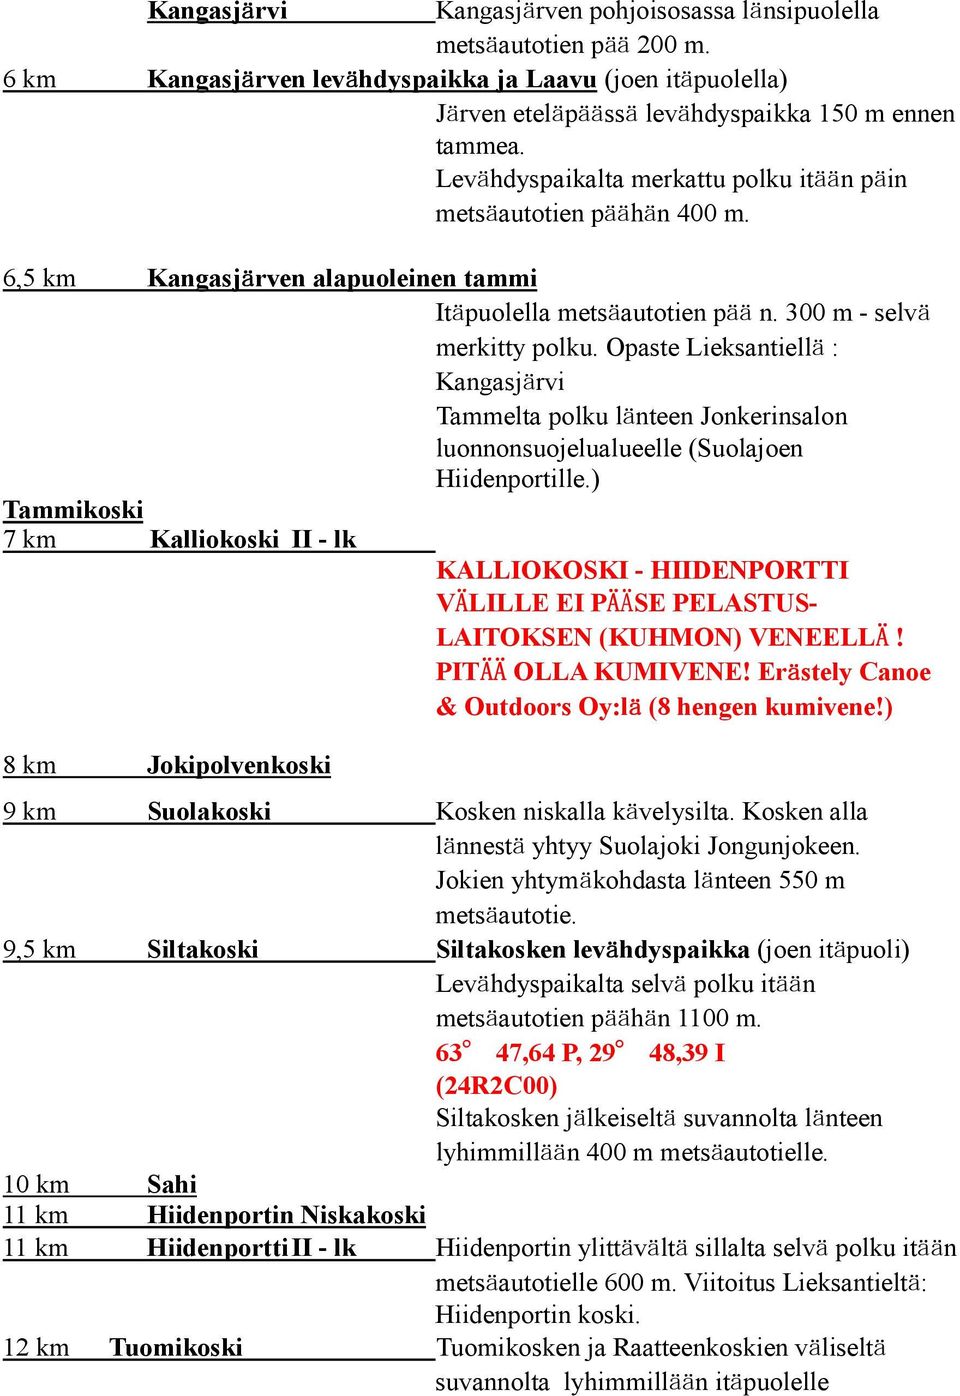 Opaste Lieksantiellä : Kangasjärvi Tammelta polku länteen Jonkerinsalon luonnonsuojelualueelle (Suolajoen Hiidenportille.